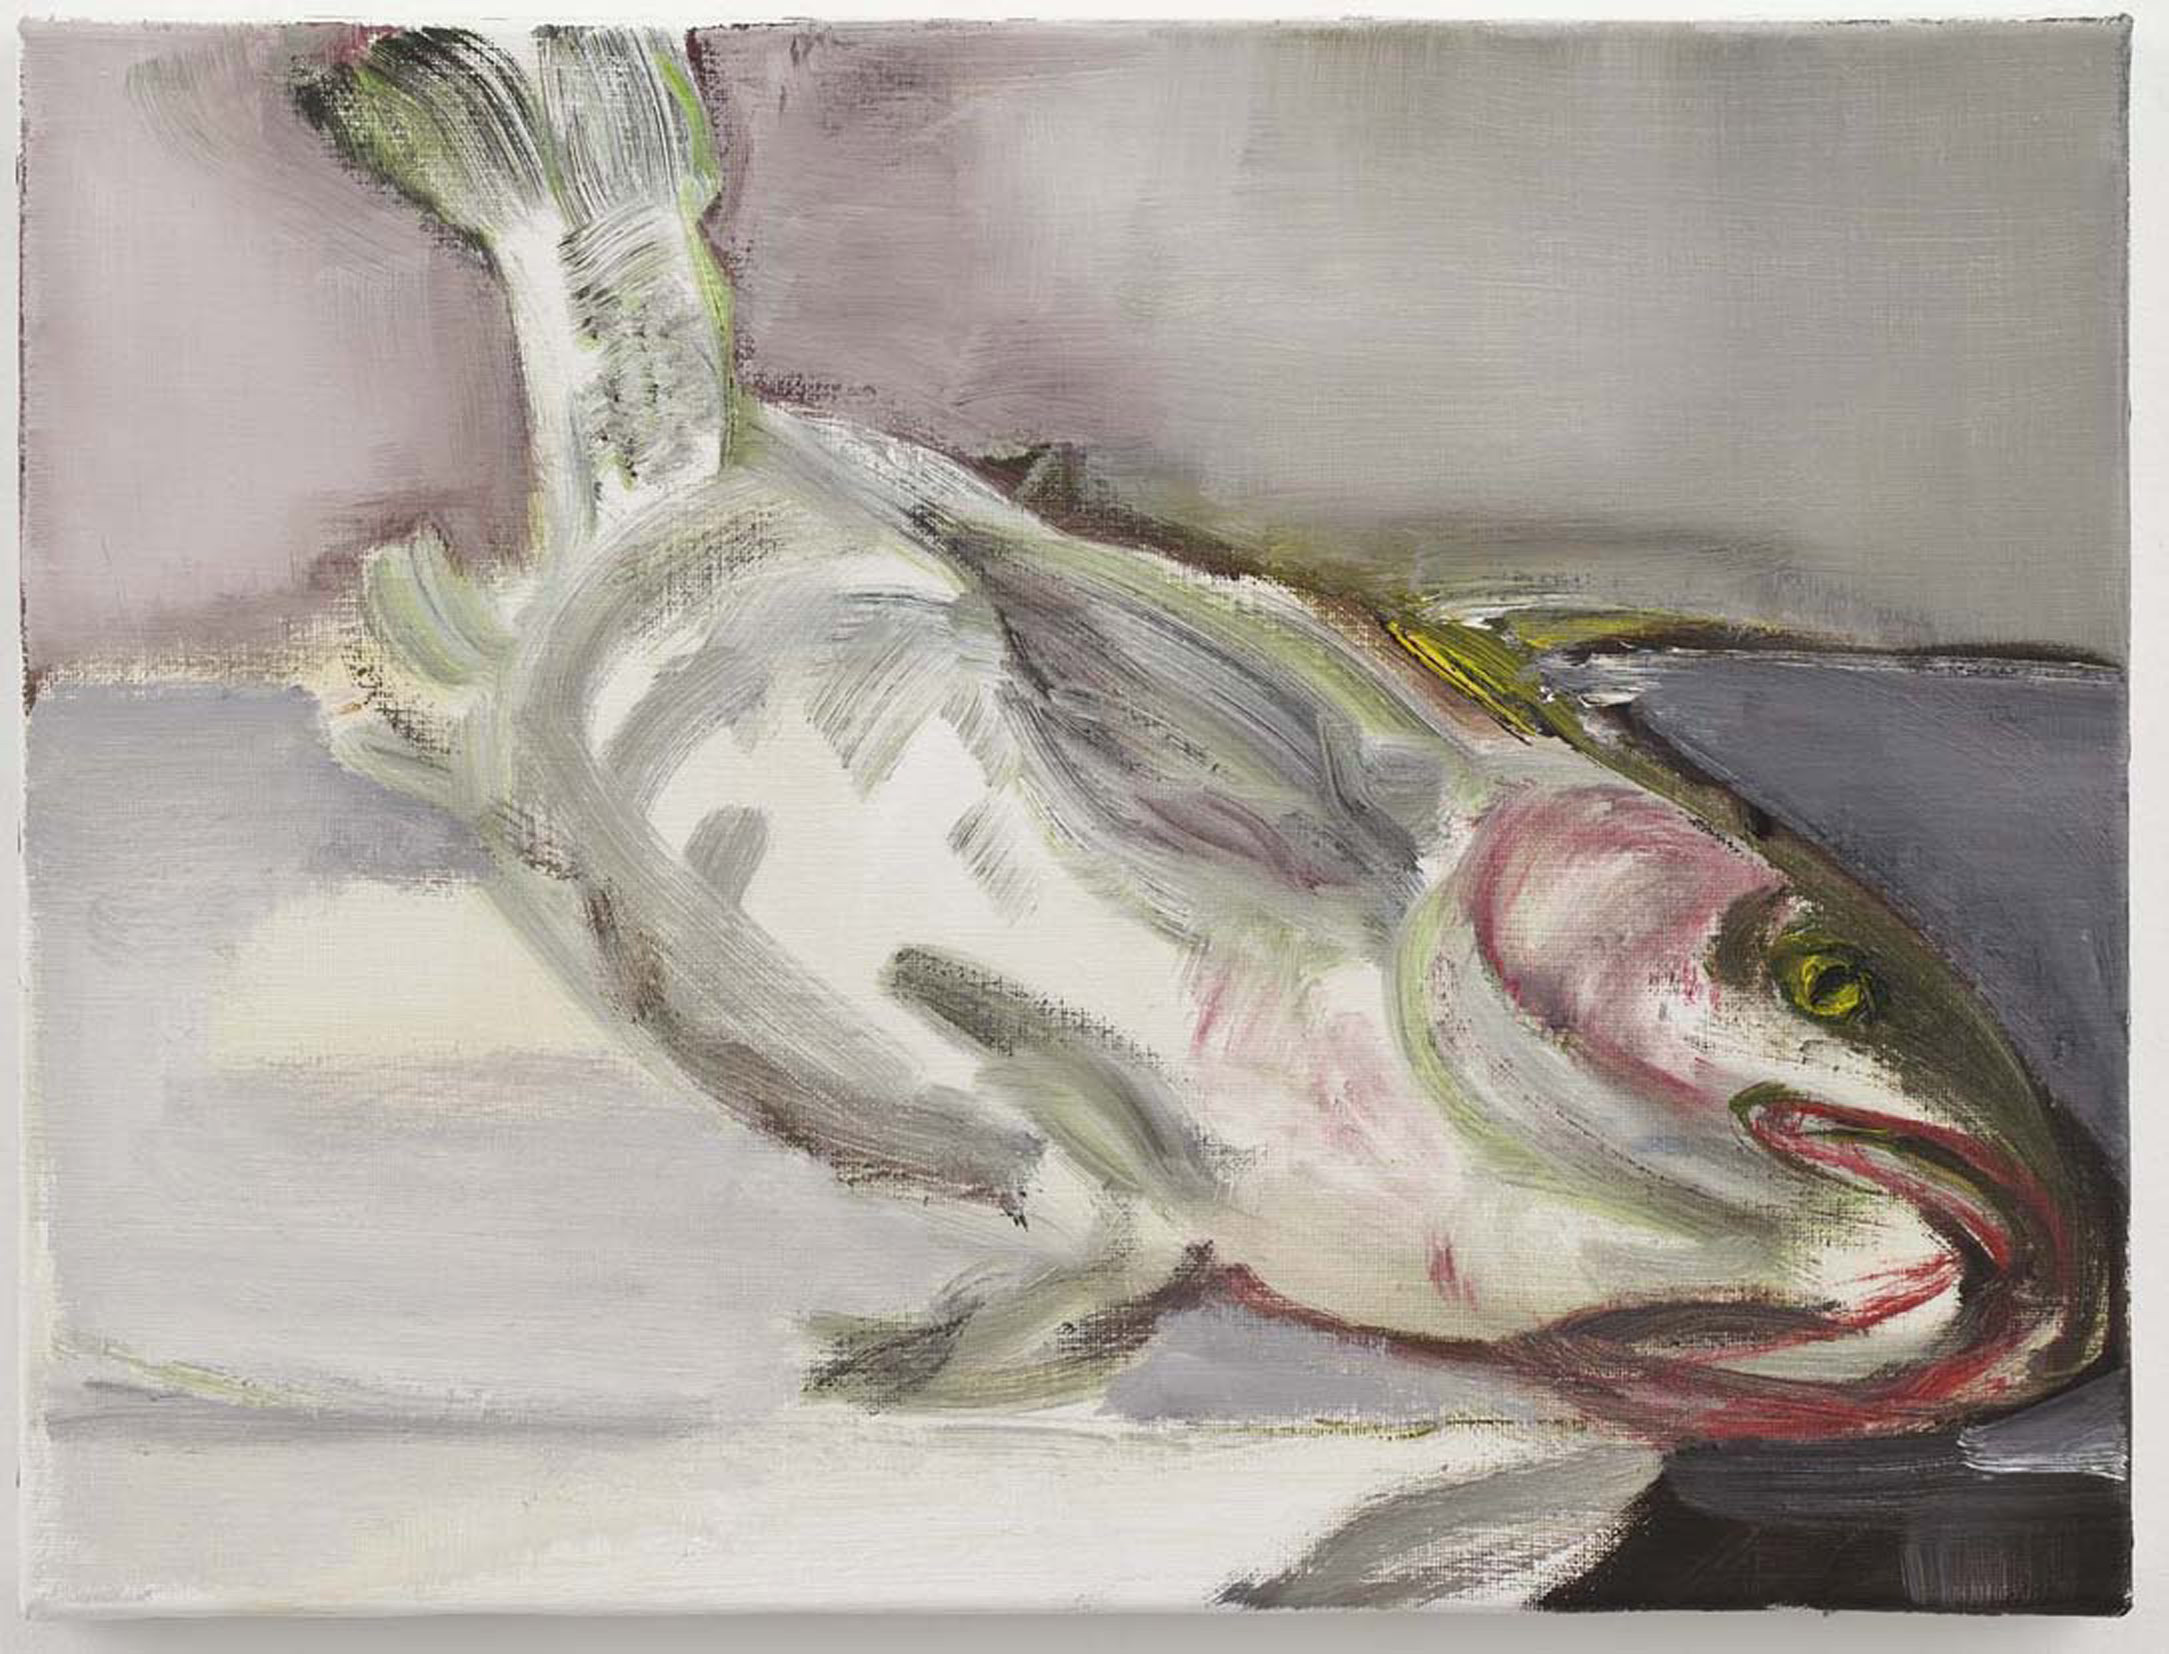 Марлен Дюма (Marlene Dumas). Современное искусство. Современная живопись. Fish - Рыба